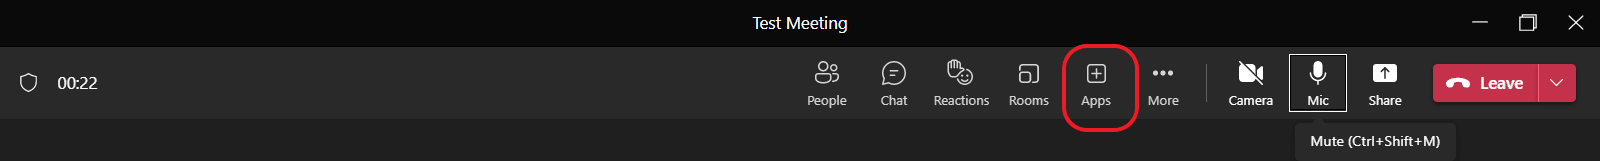 Apps in Microsoft Teams meeting